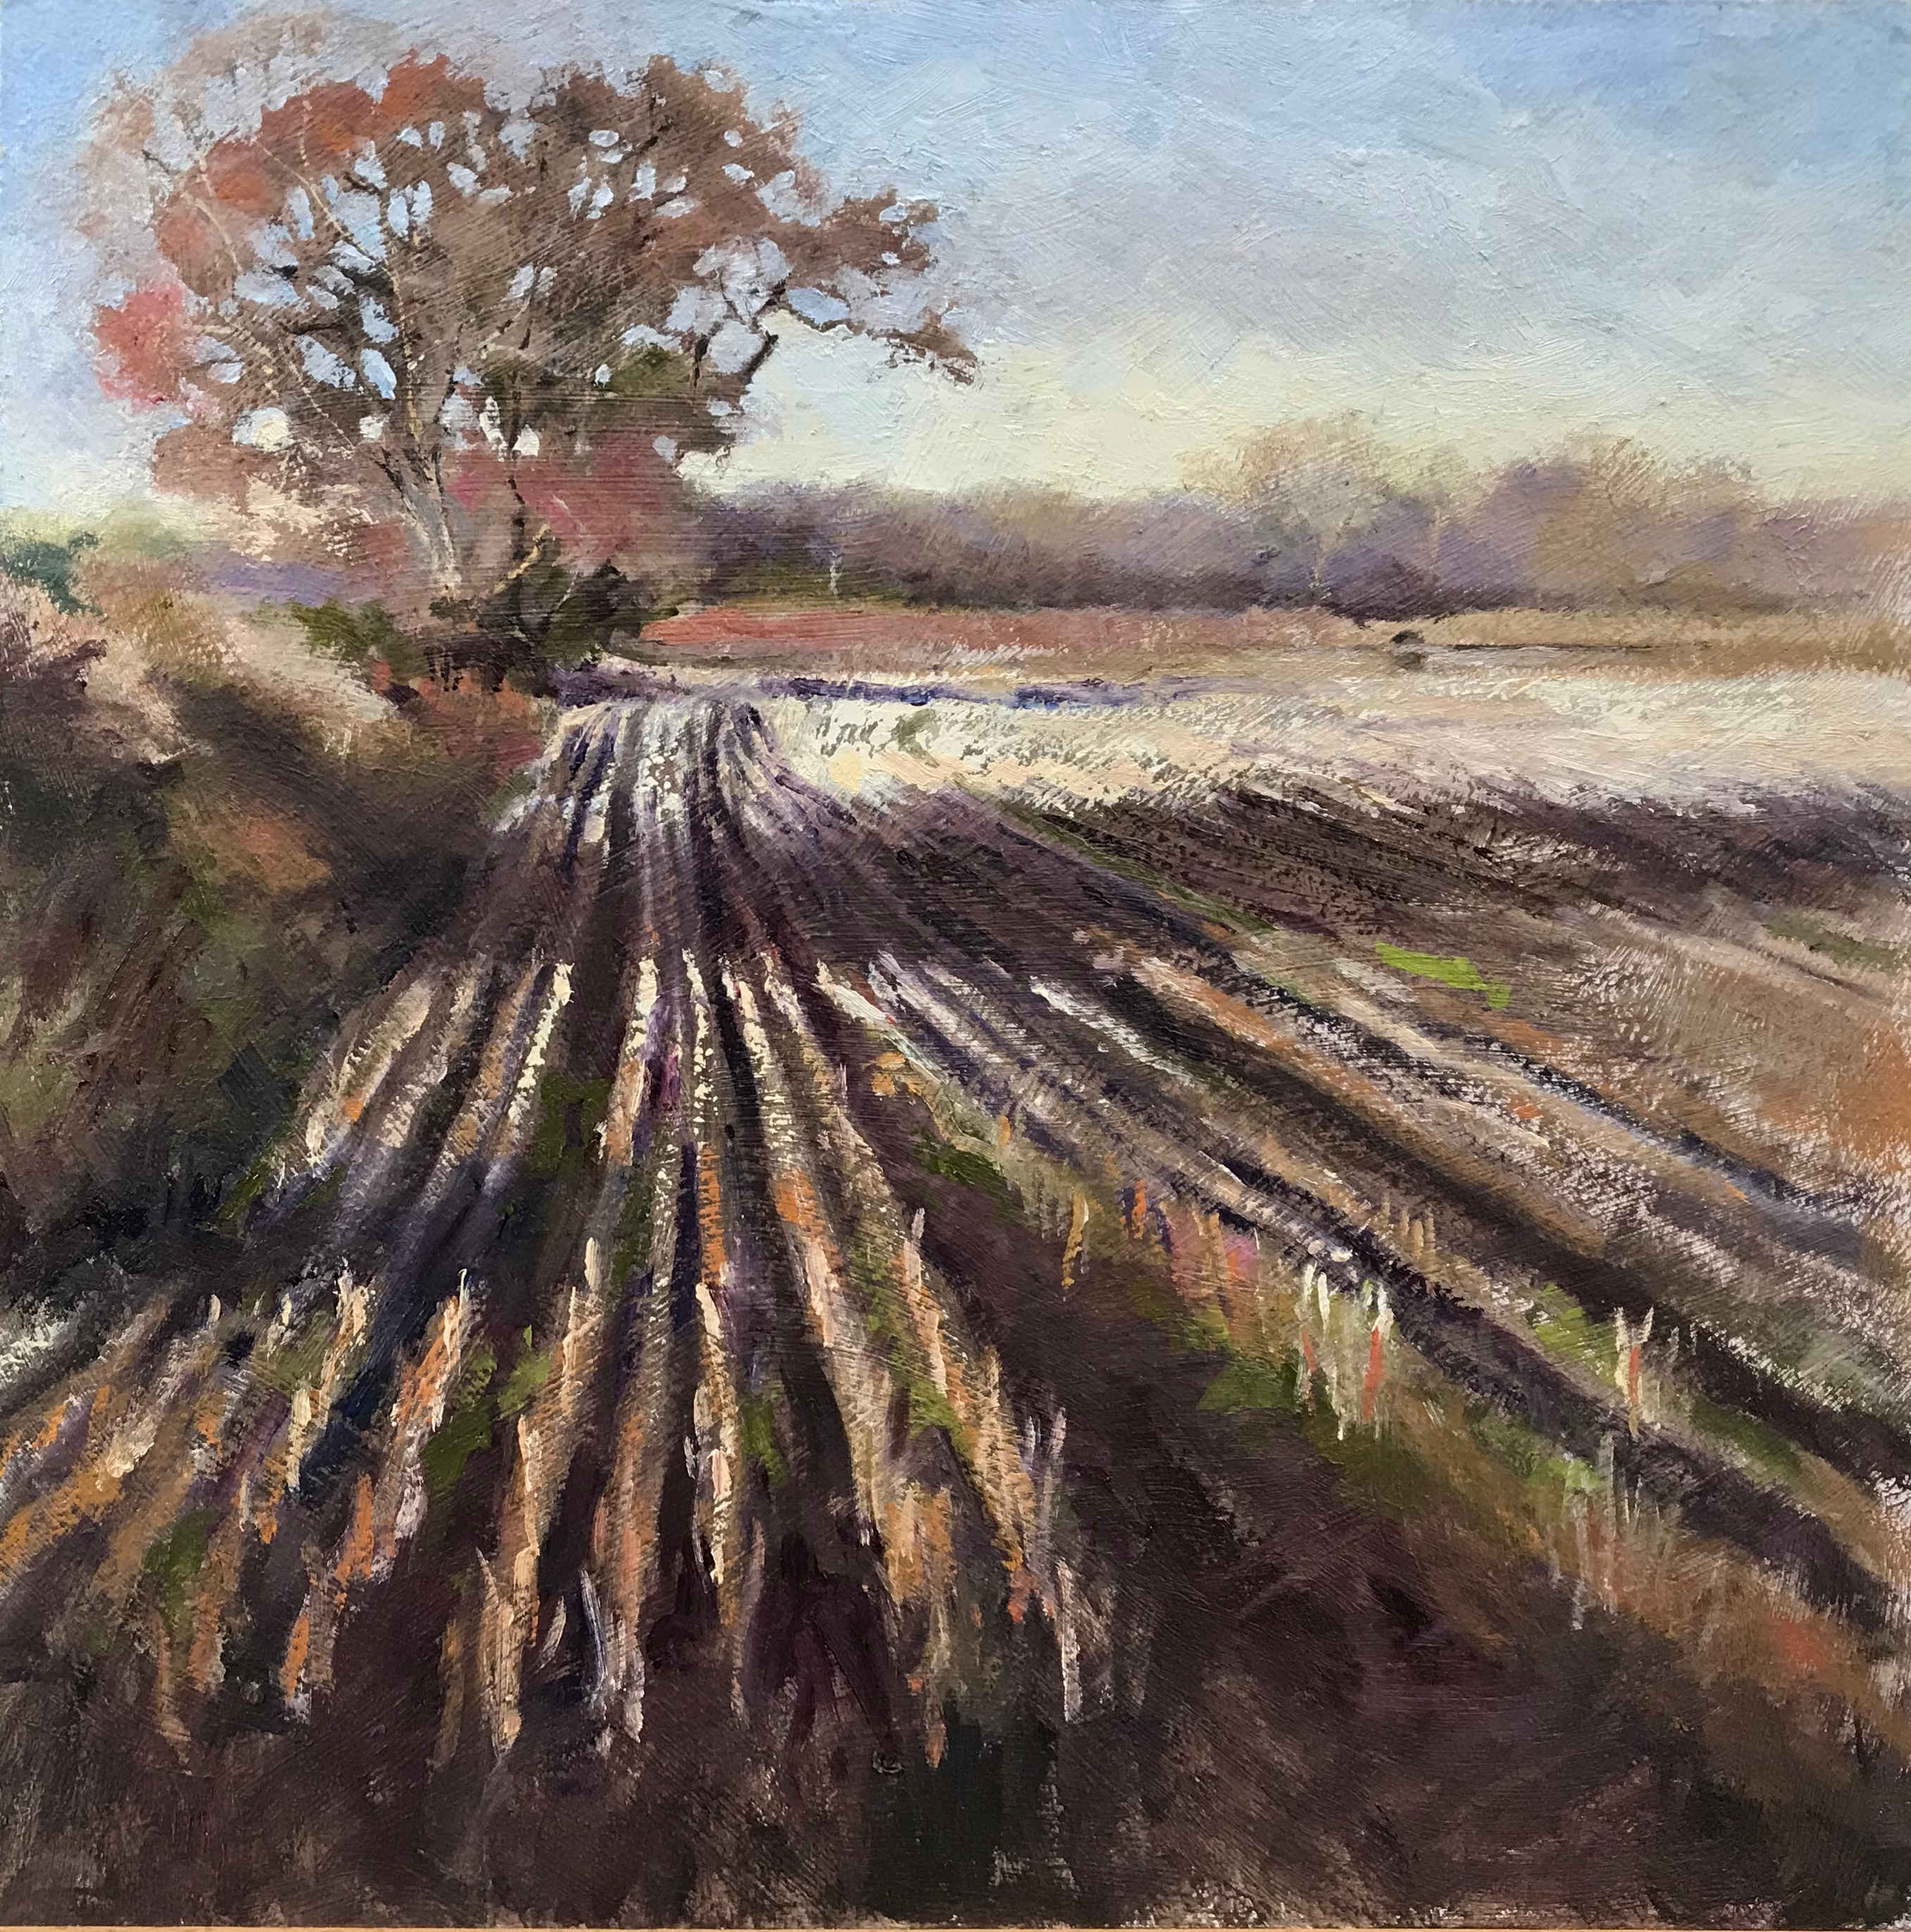 Winter fields, Ollerton